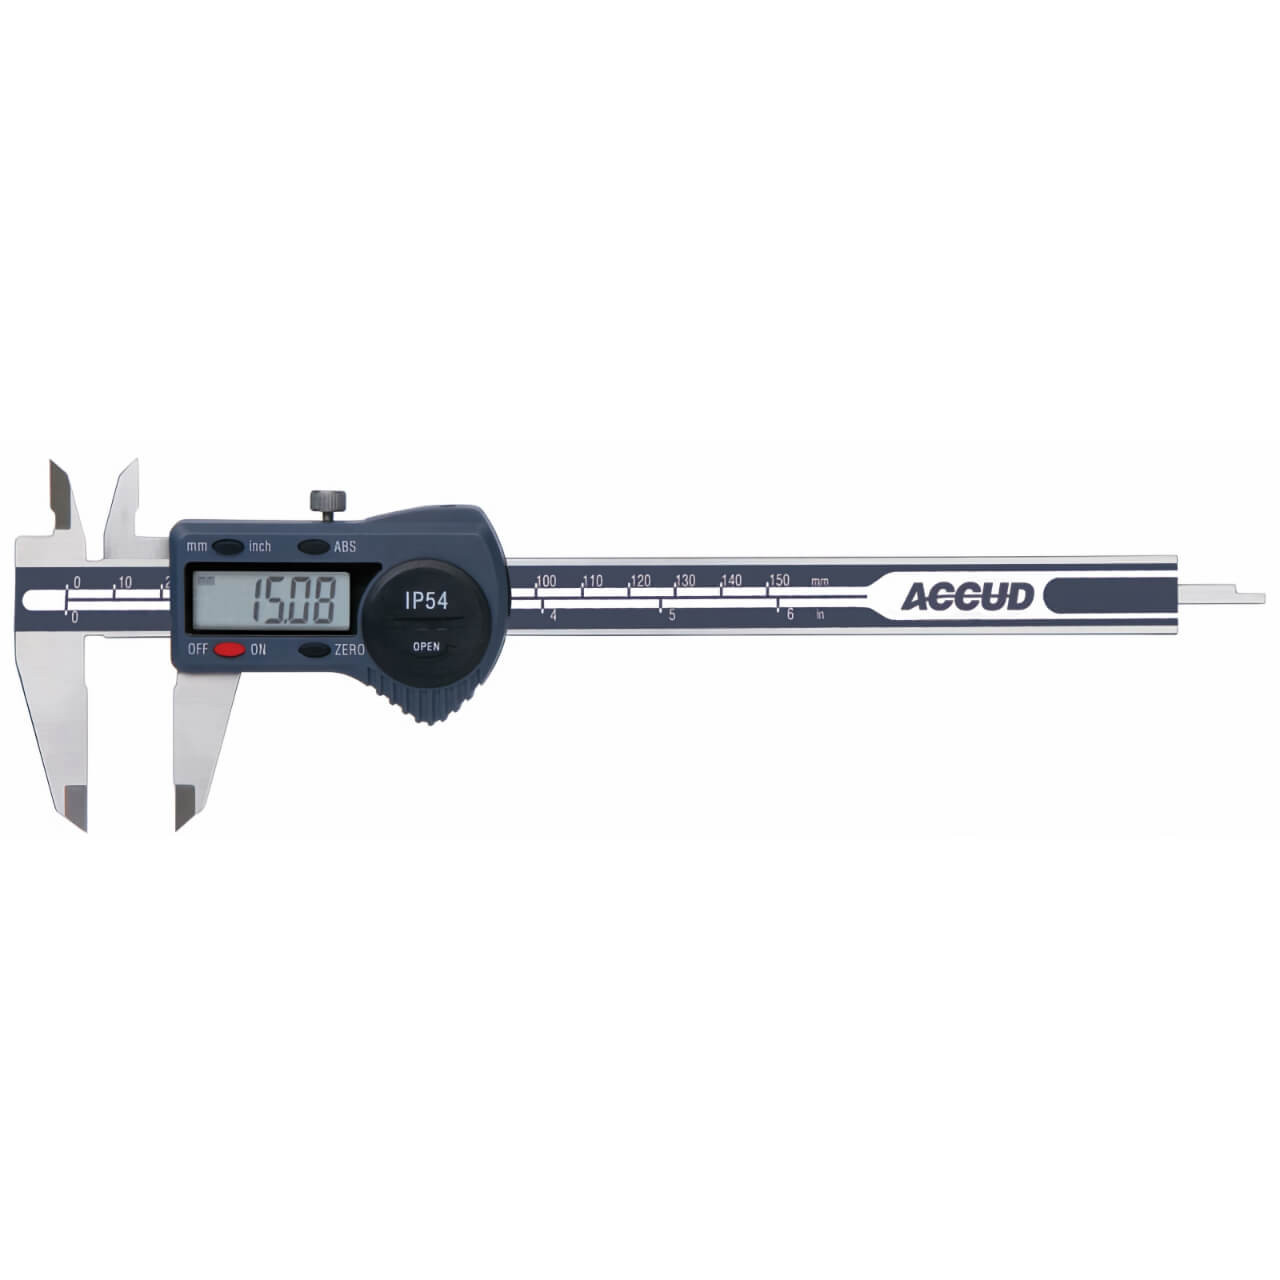 Accud 0-300mm/0-12” Digital Caliper IP54